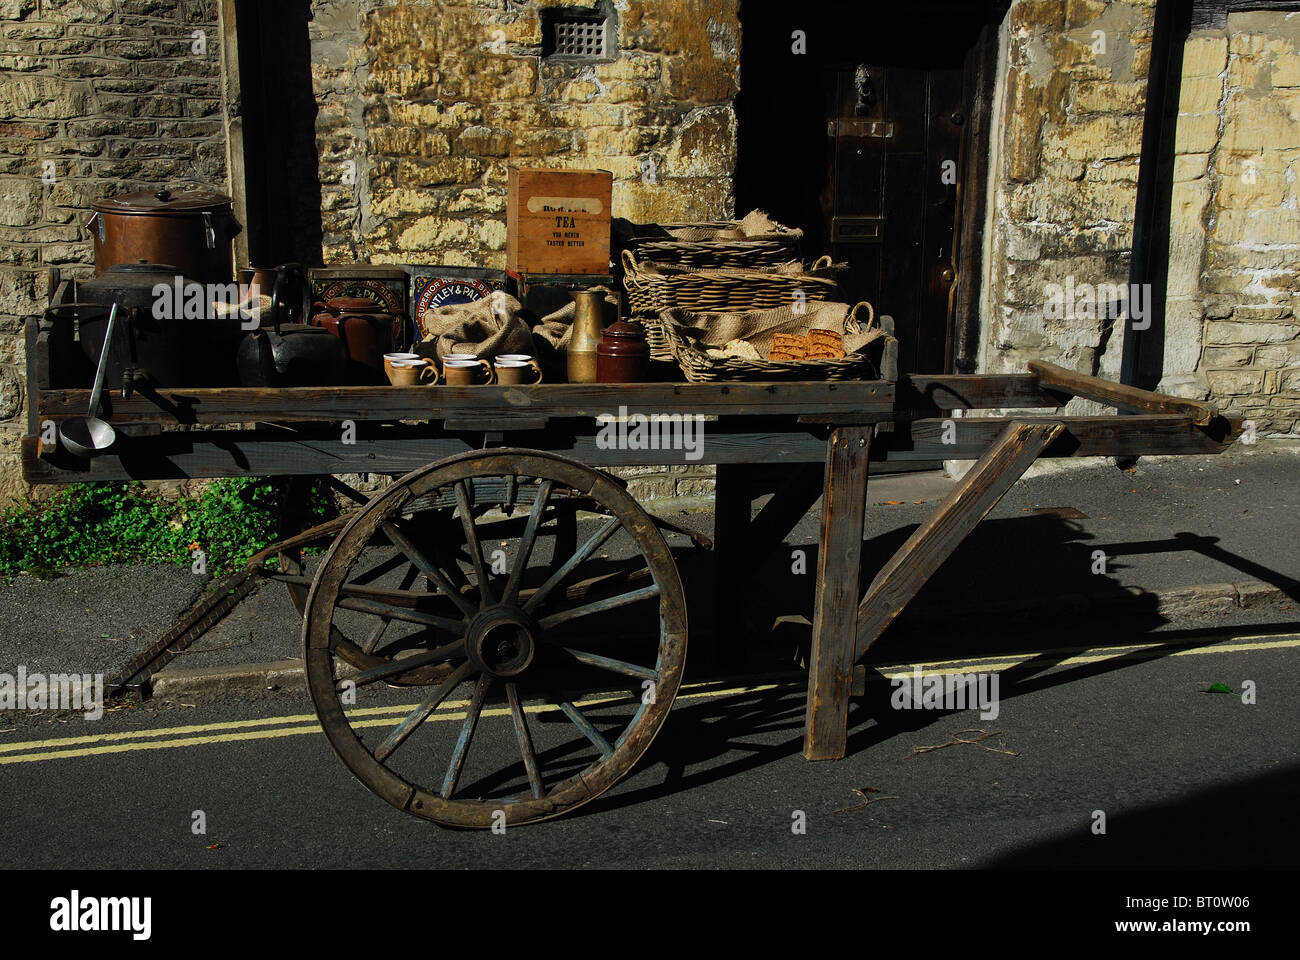 Un vecchio stile di stallo di mercato su ruote al bellissimo villaggio di Castle Combe, Wiltshire, preparando per le riprese Foto Stock